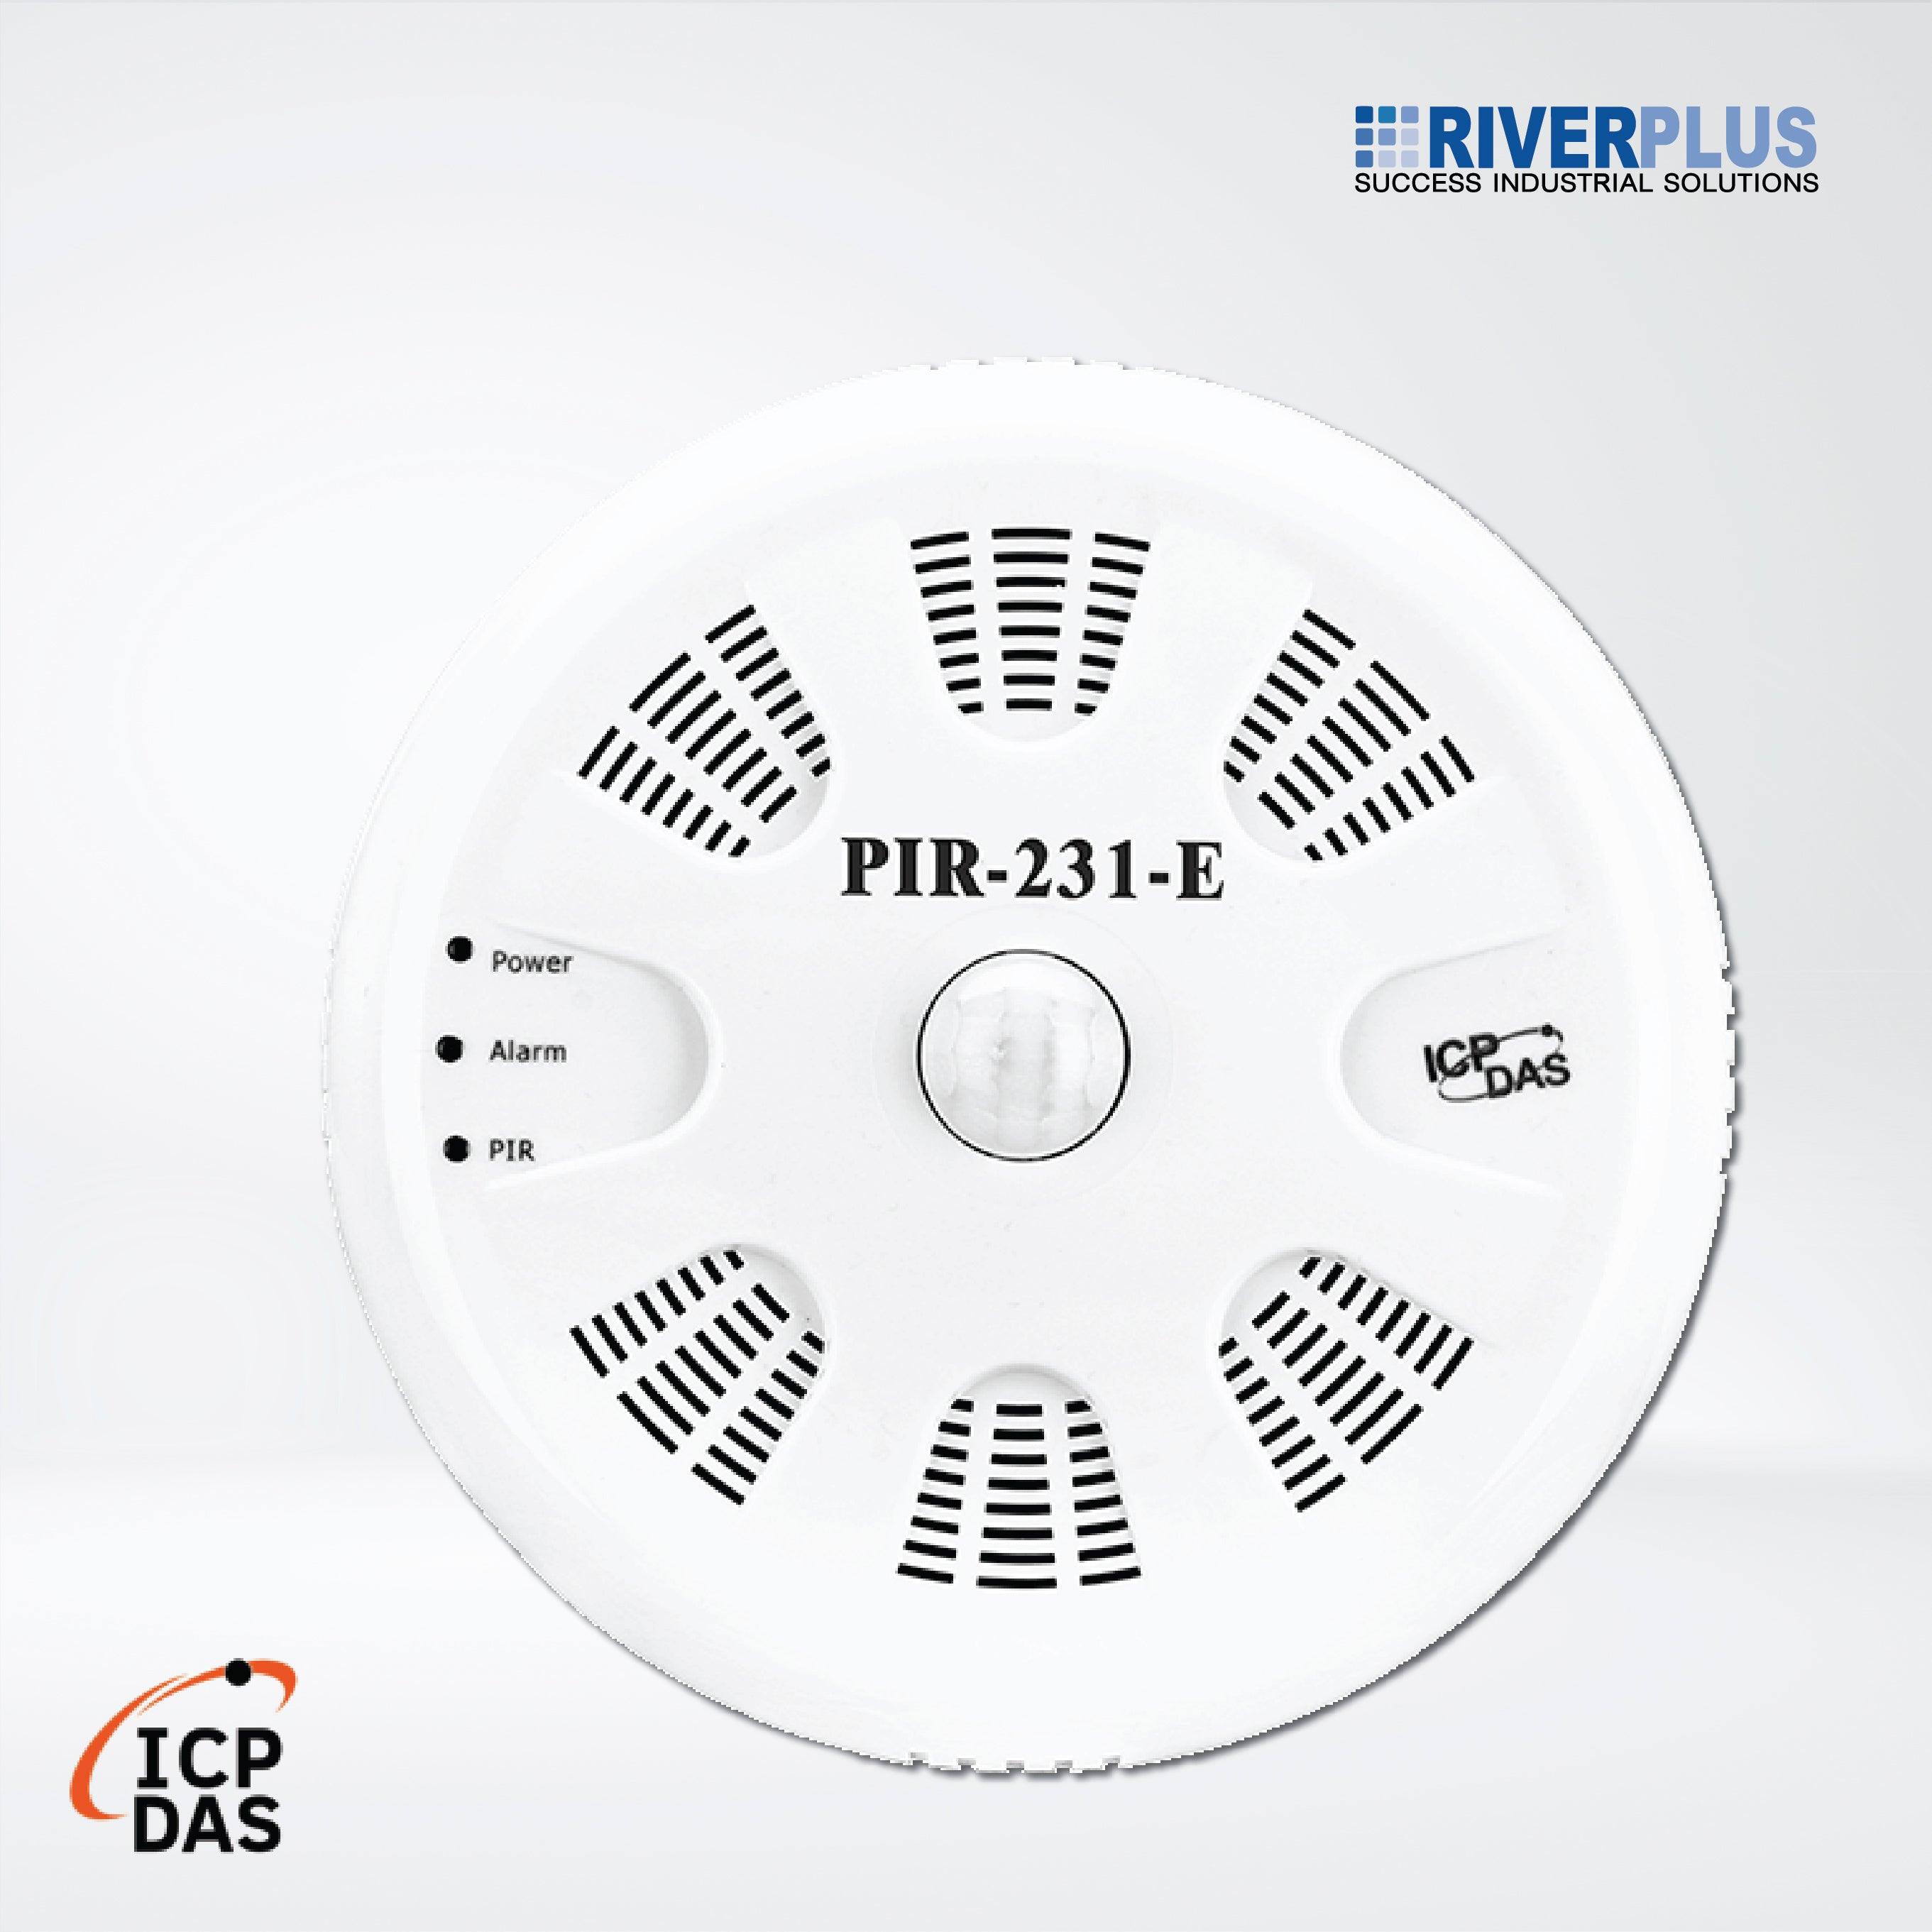 PIR-231-E PIR Motion Sensor (10m), Temperature and Humidity Sensor Module - Riverplus